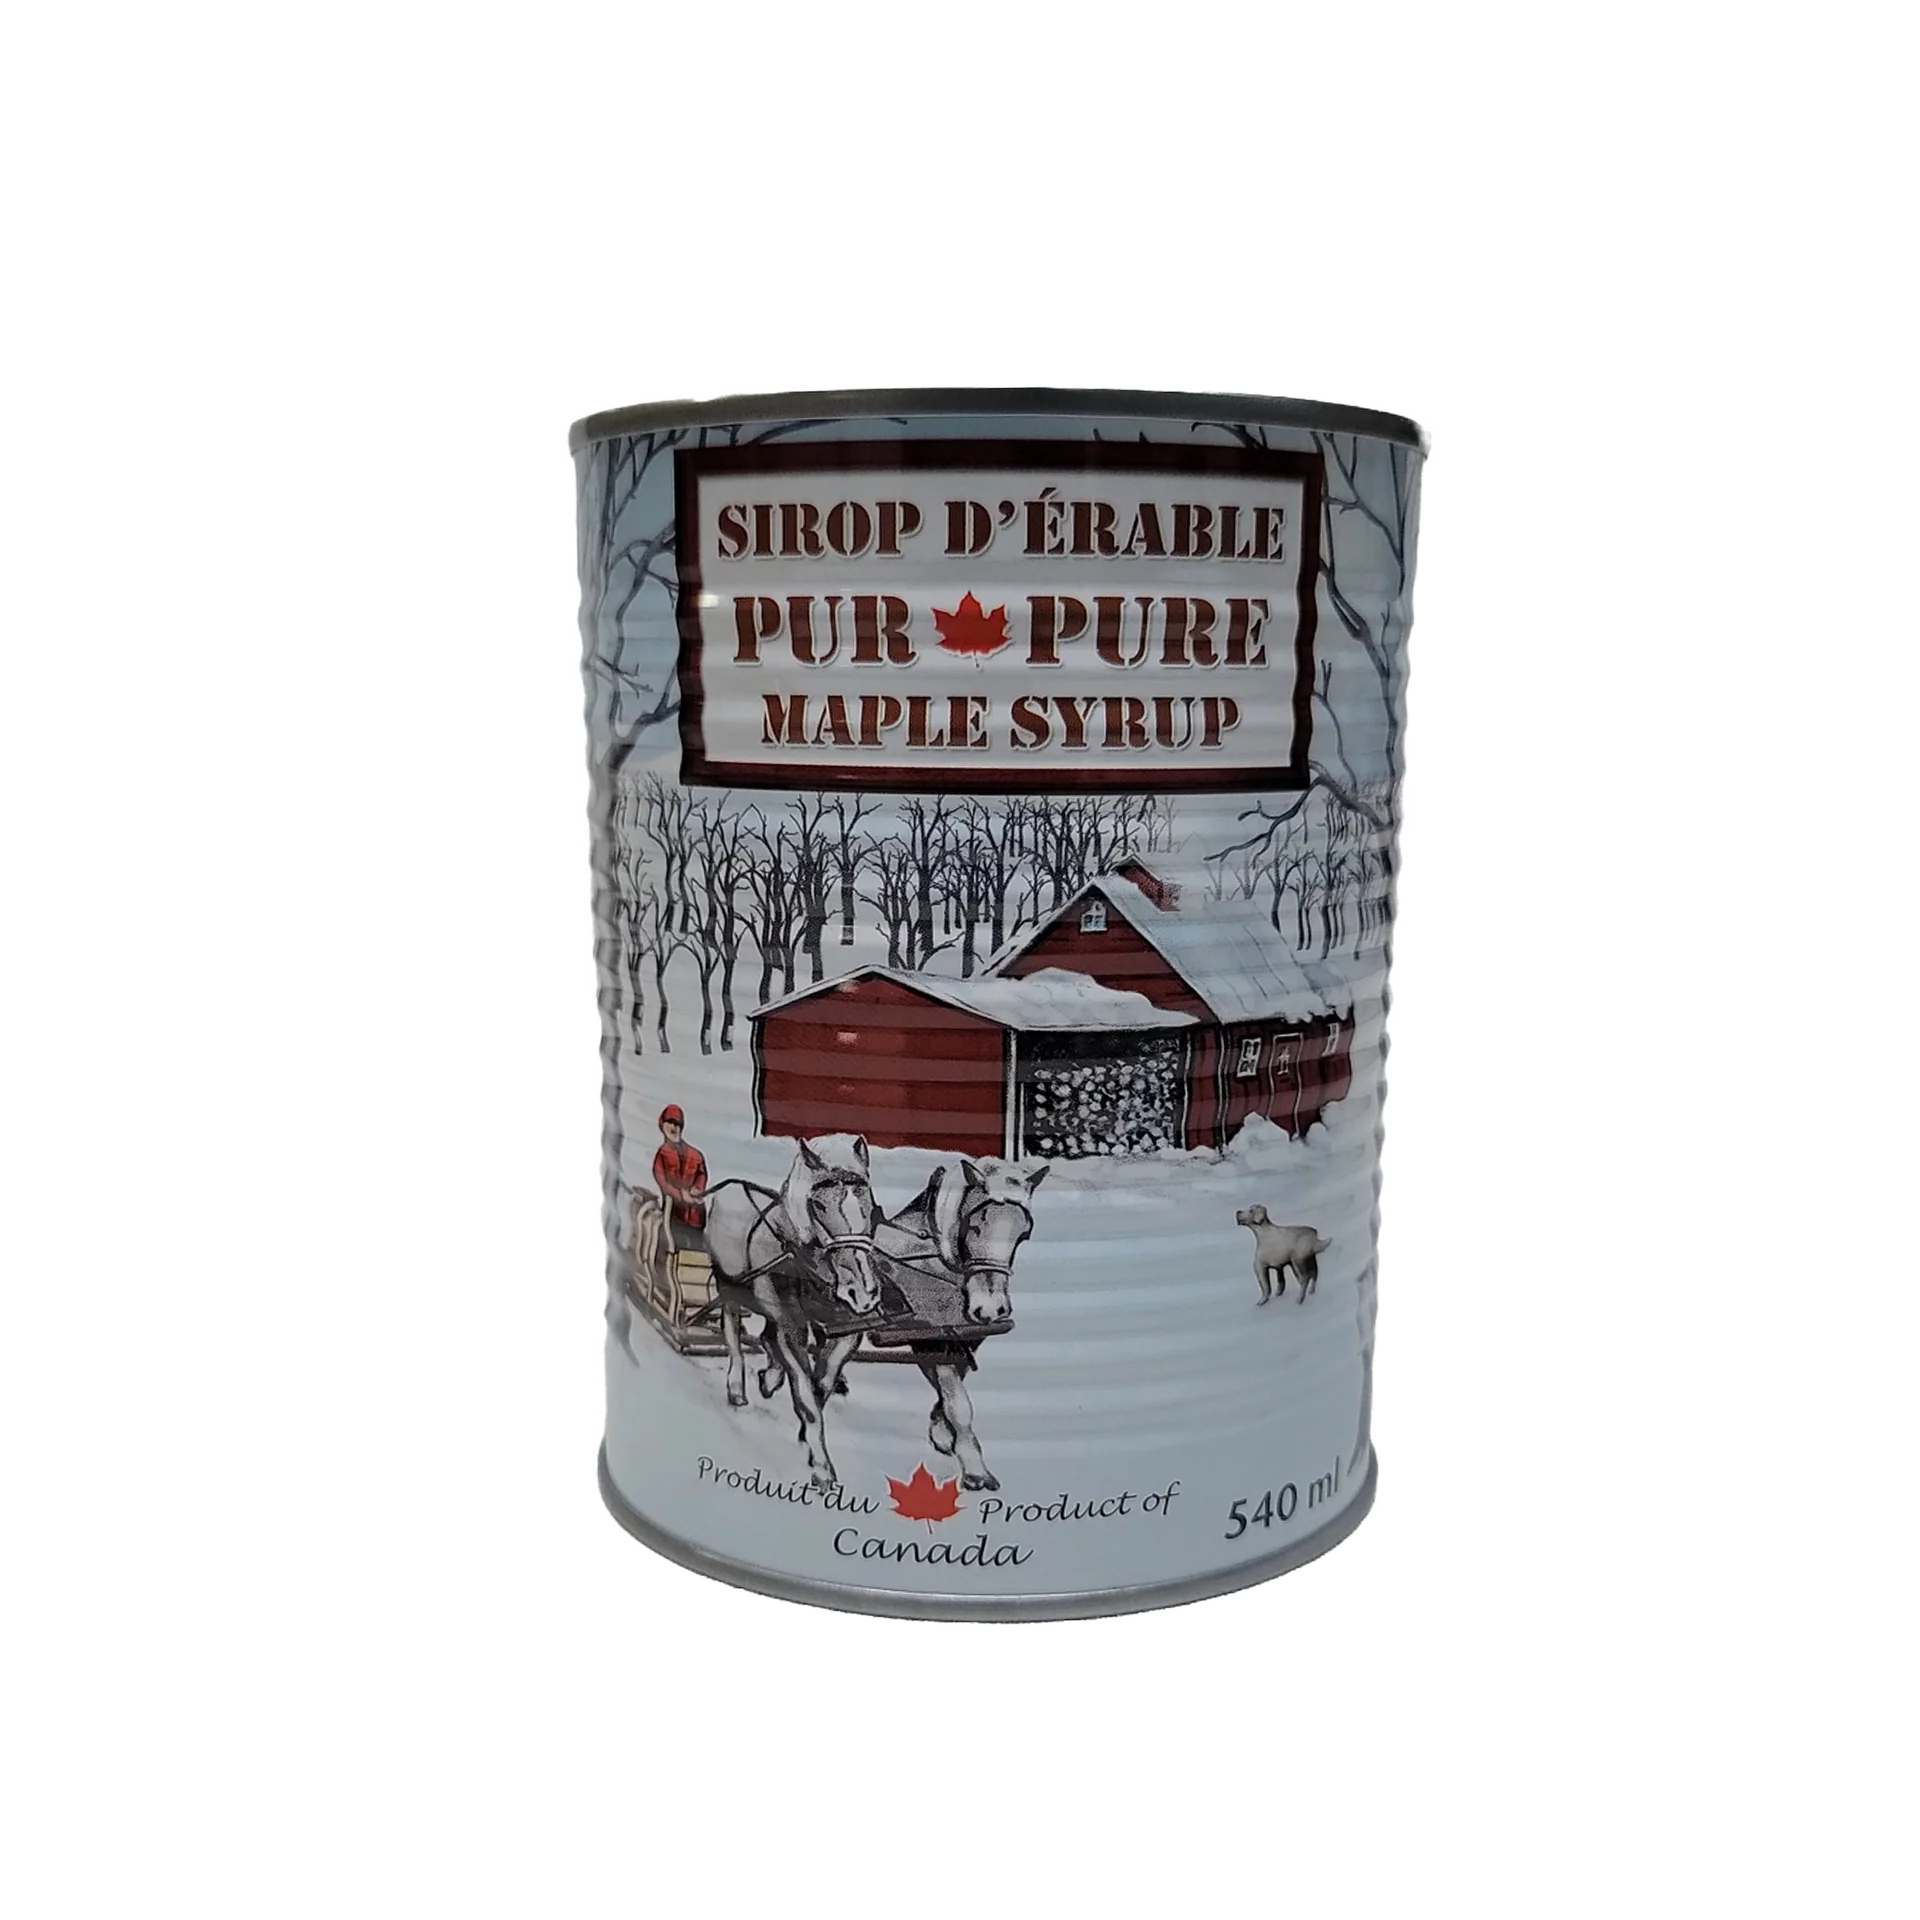 Pure Maple Syrup by Les Érables du Patrimoine, 540mL